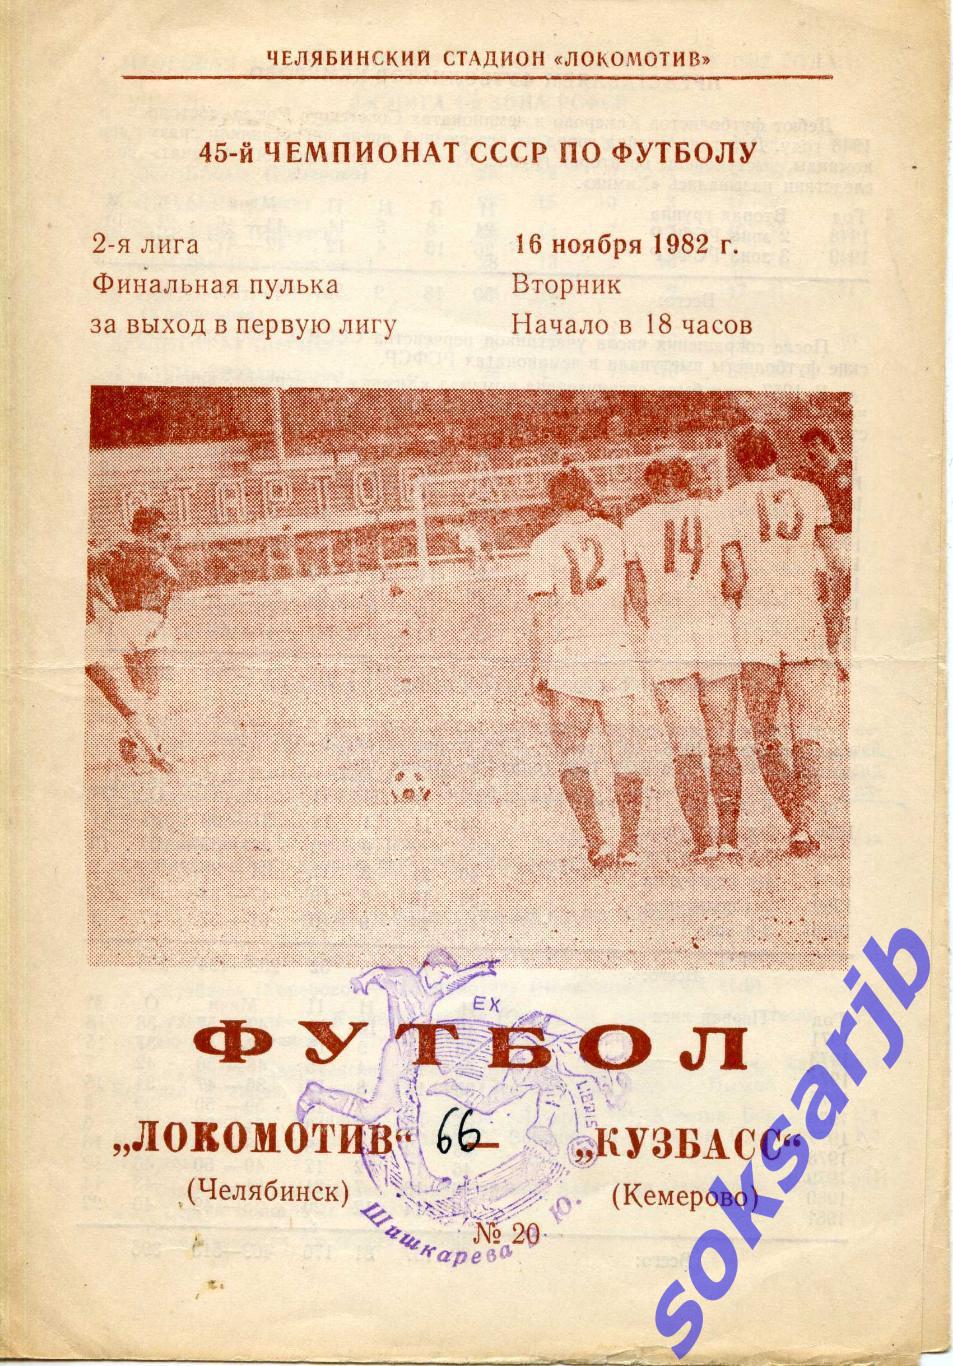 1982.11.16. Локомотив Челябинск - Кузбасс Кемерово.